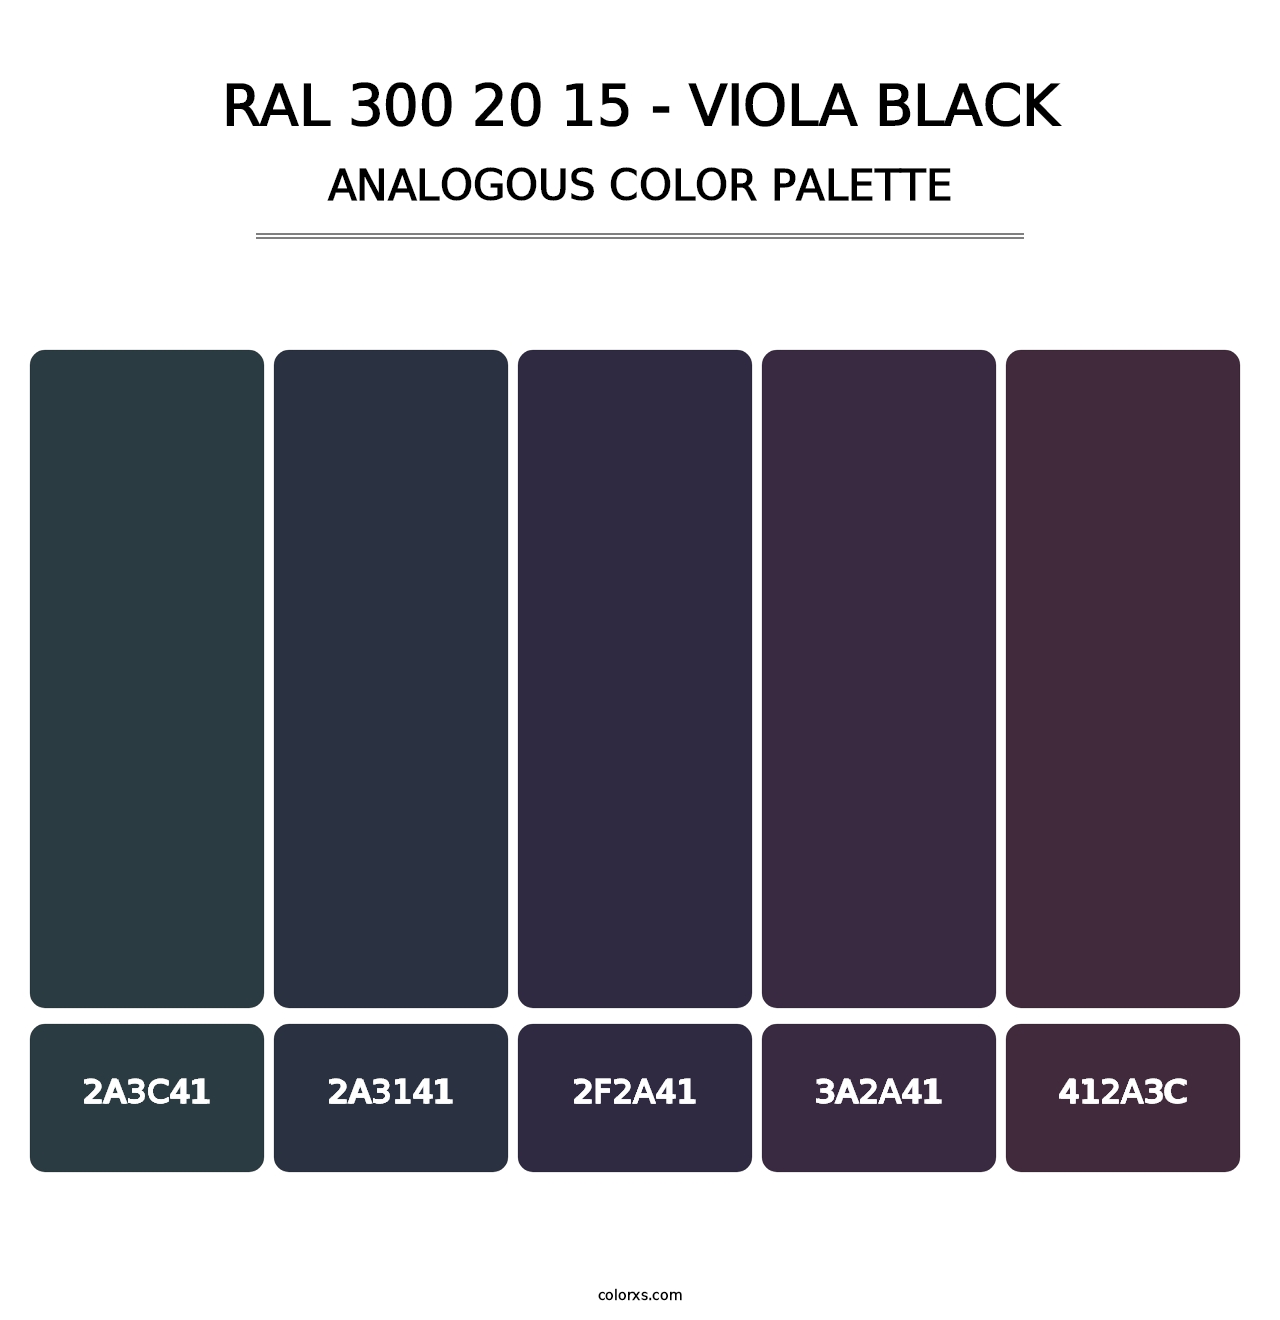 RAL 300 20 15 - Viola Black - Analogous Color Palette